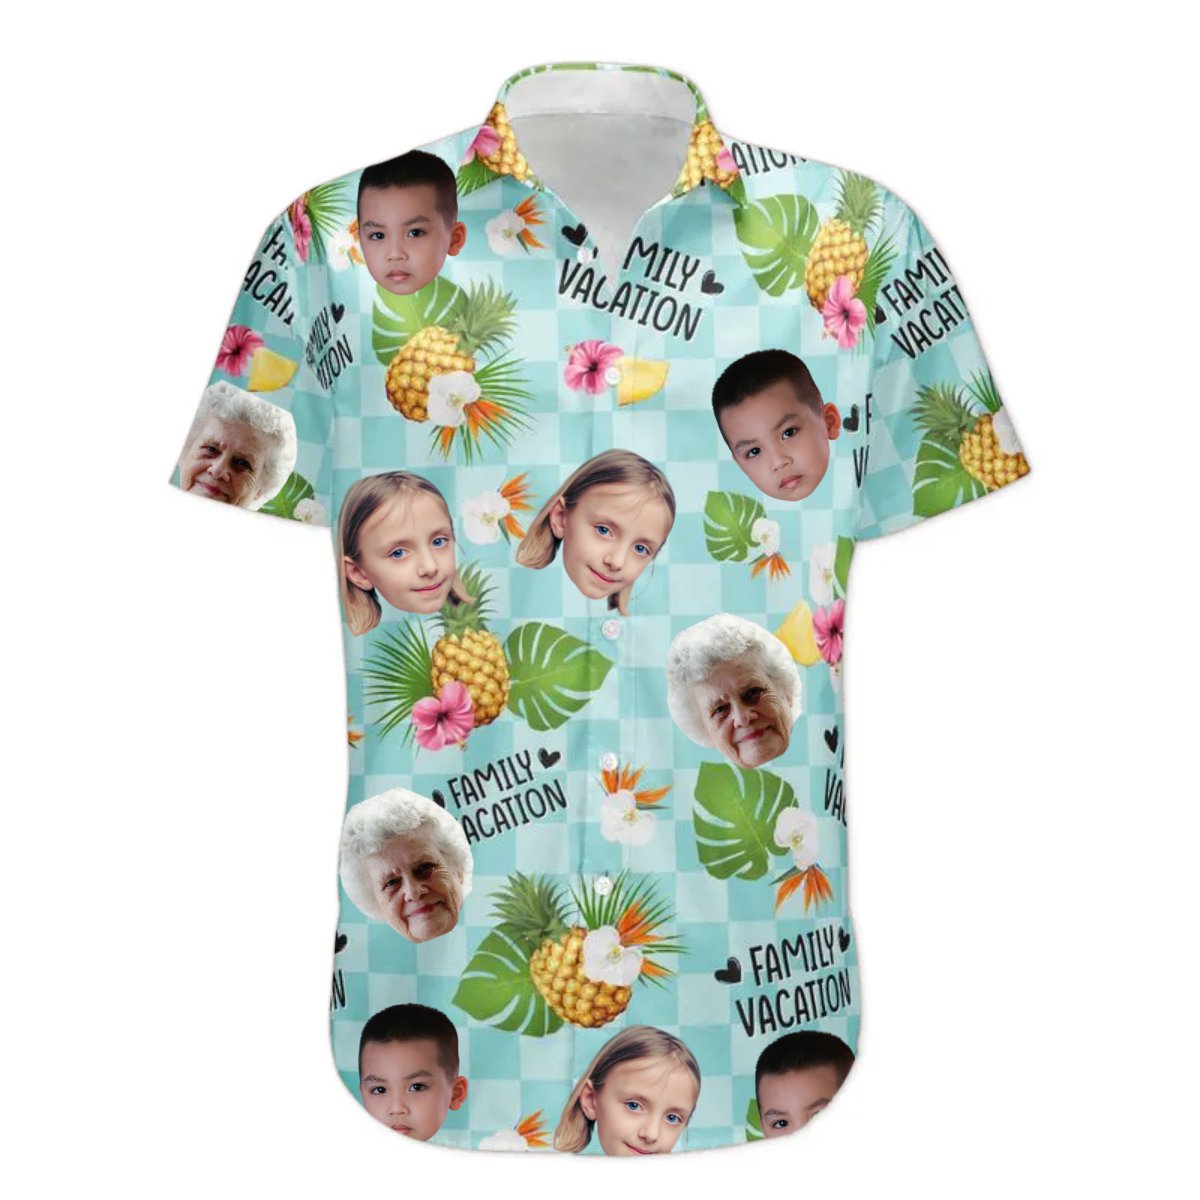 Family - Family Vacation - Personalized Photo Hawaiian Shirt - The Next Custom Gift